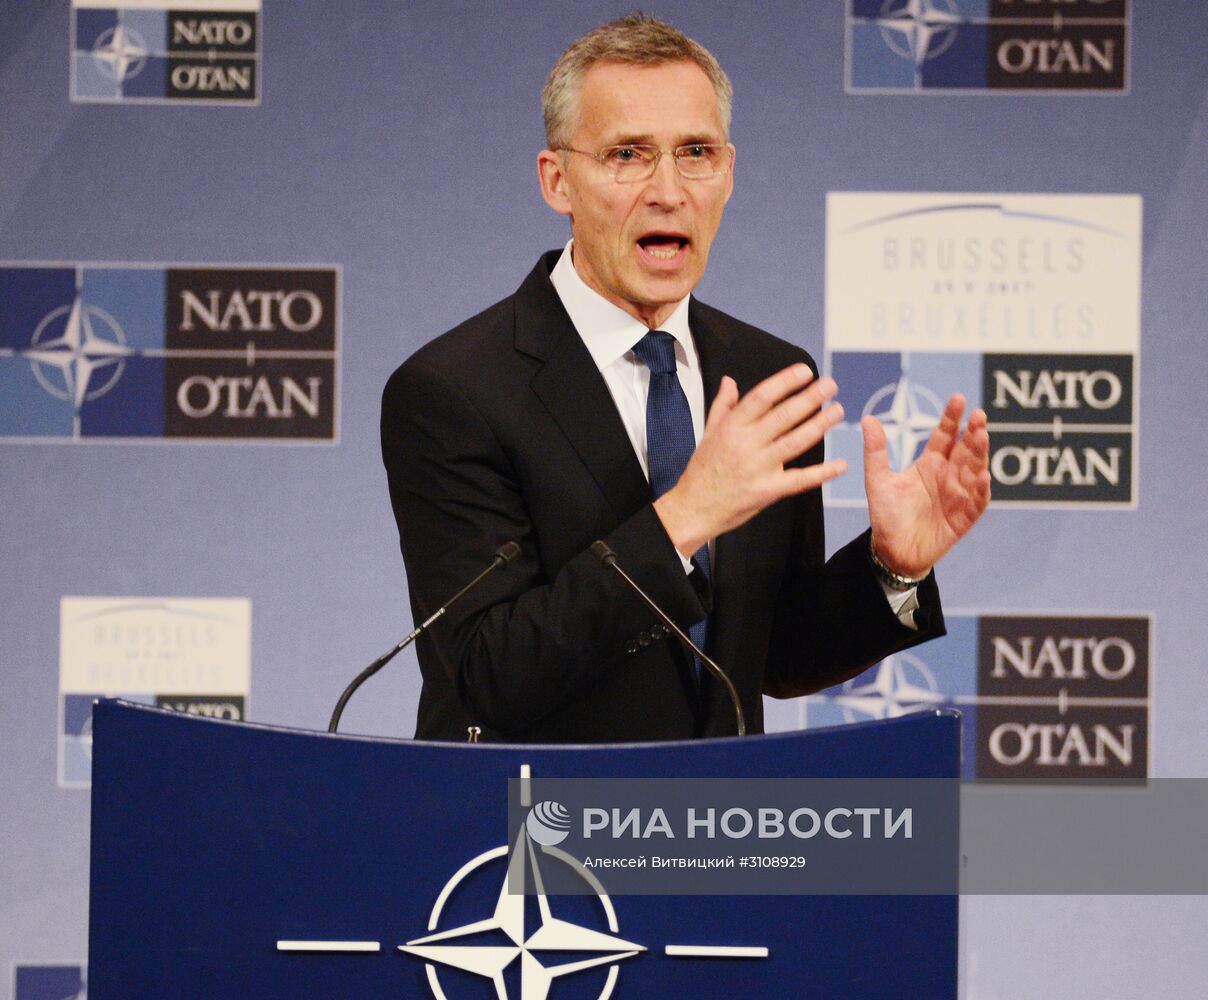 П/к генсека НАТО Йенса Столтенберга в преддверии саммита НАТО